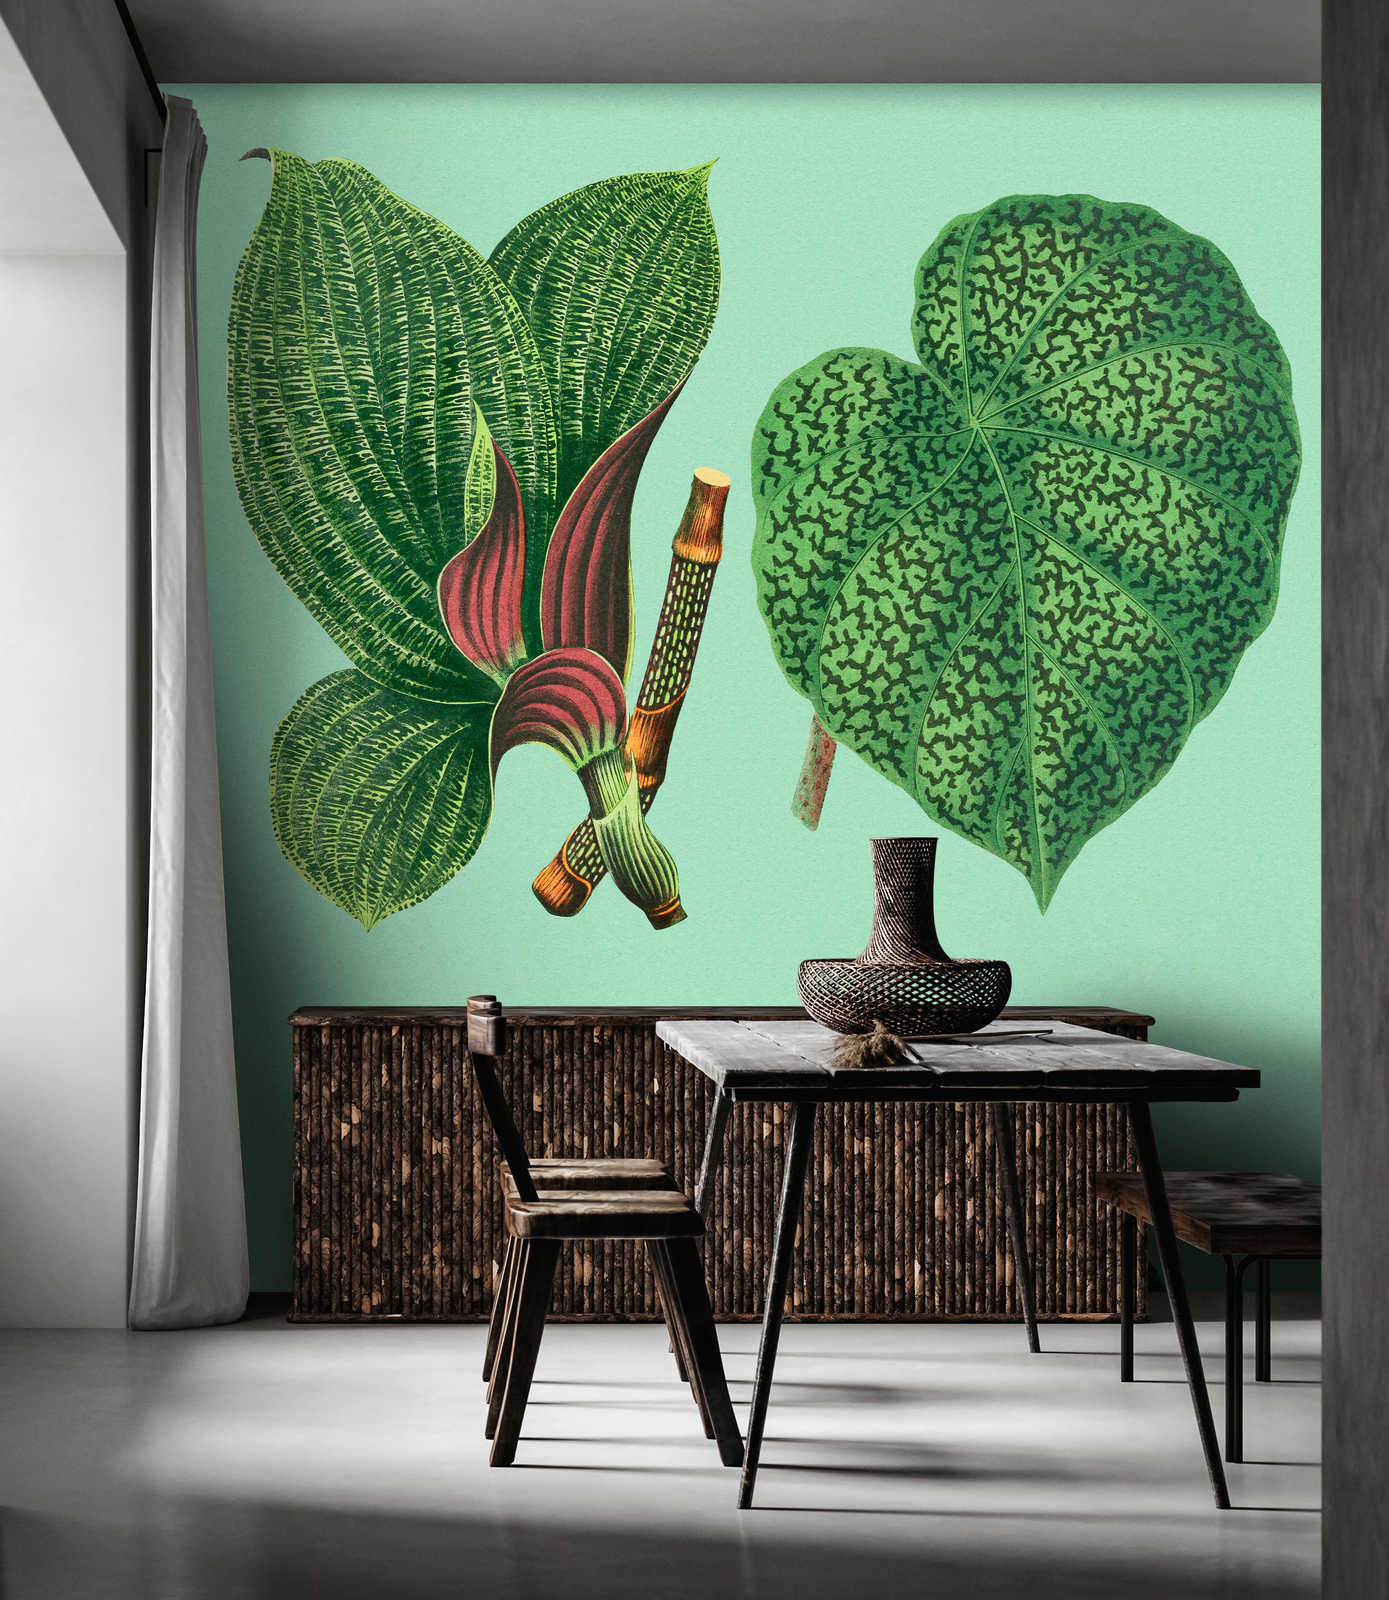             Jardín de hojas 2 - Hojas de papel pintado de fotos verde con plantas tropicales
        